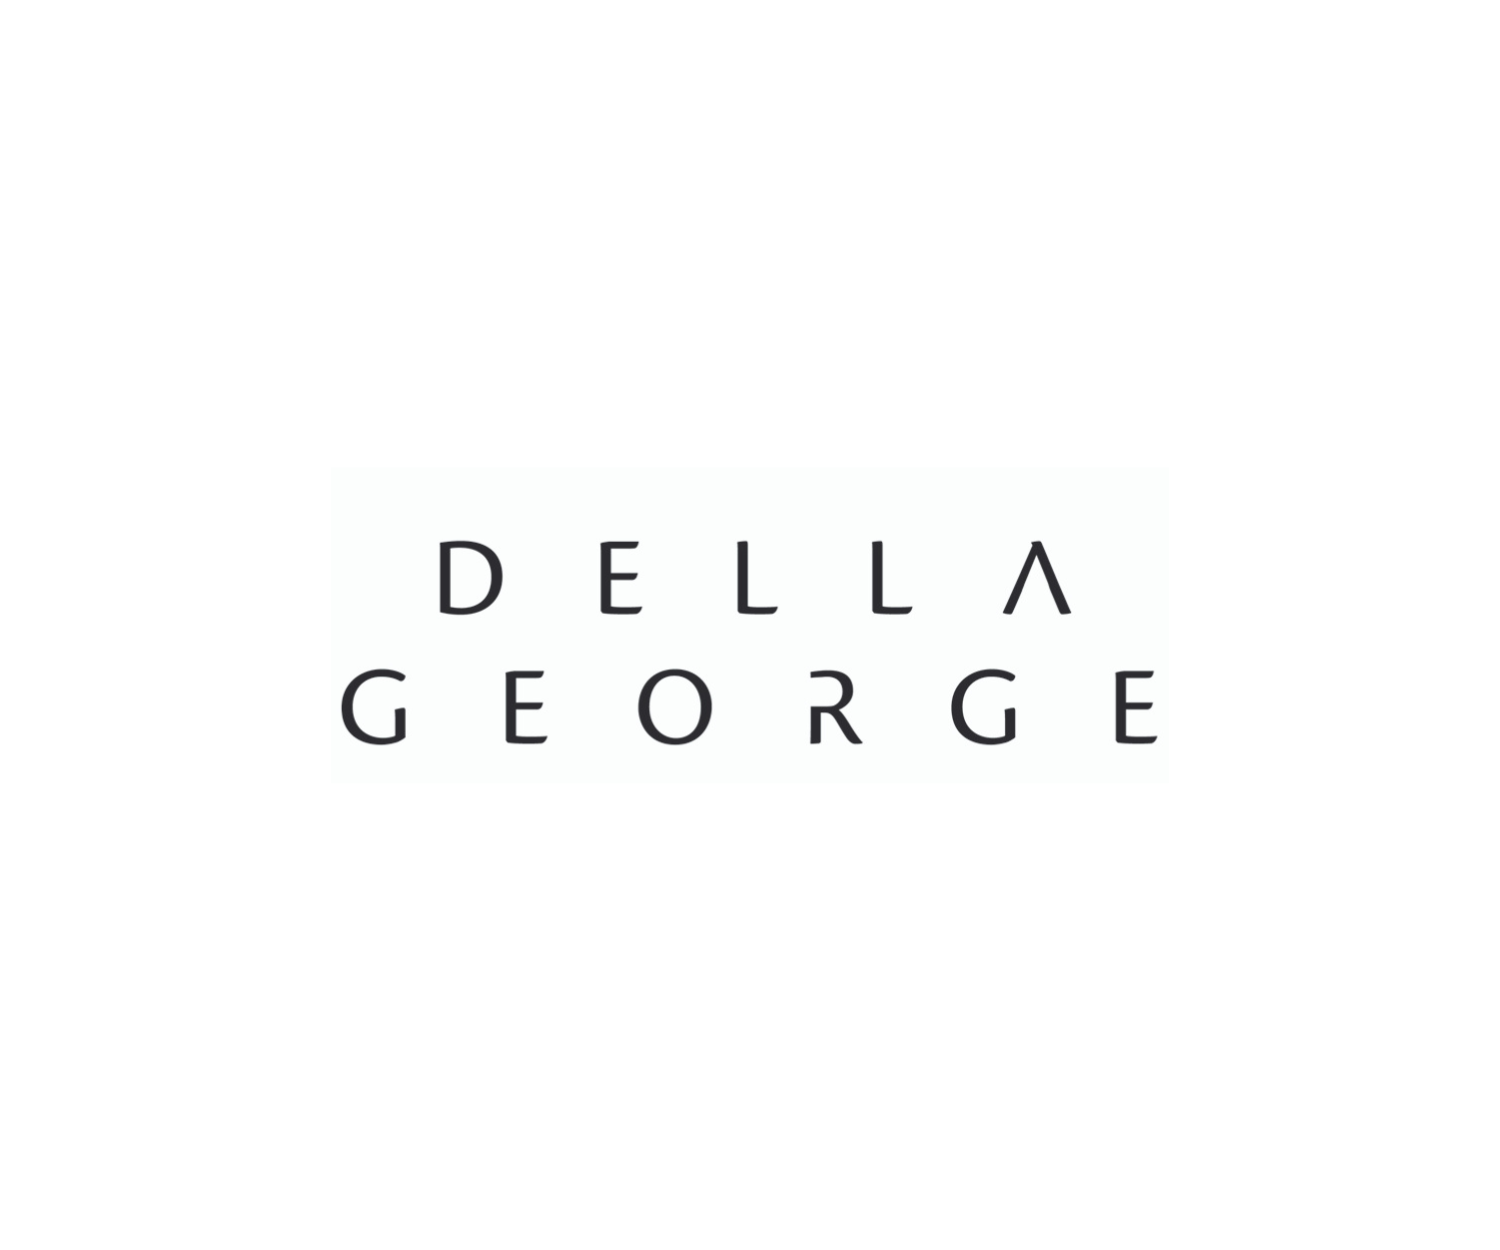 I AM SQUARED - Logo - Della George 2